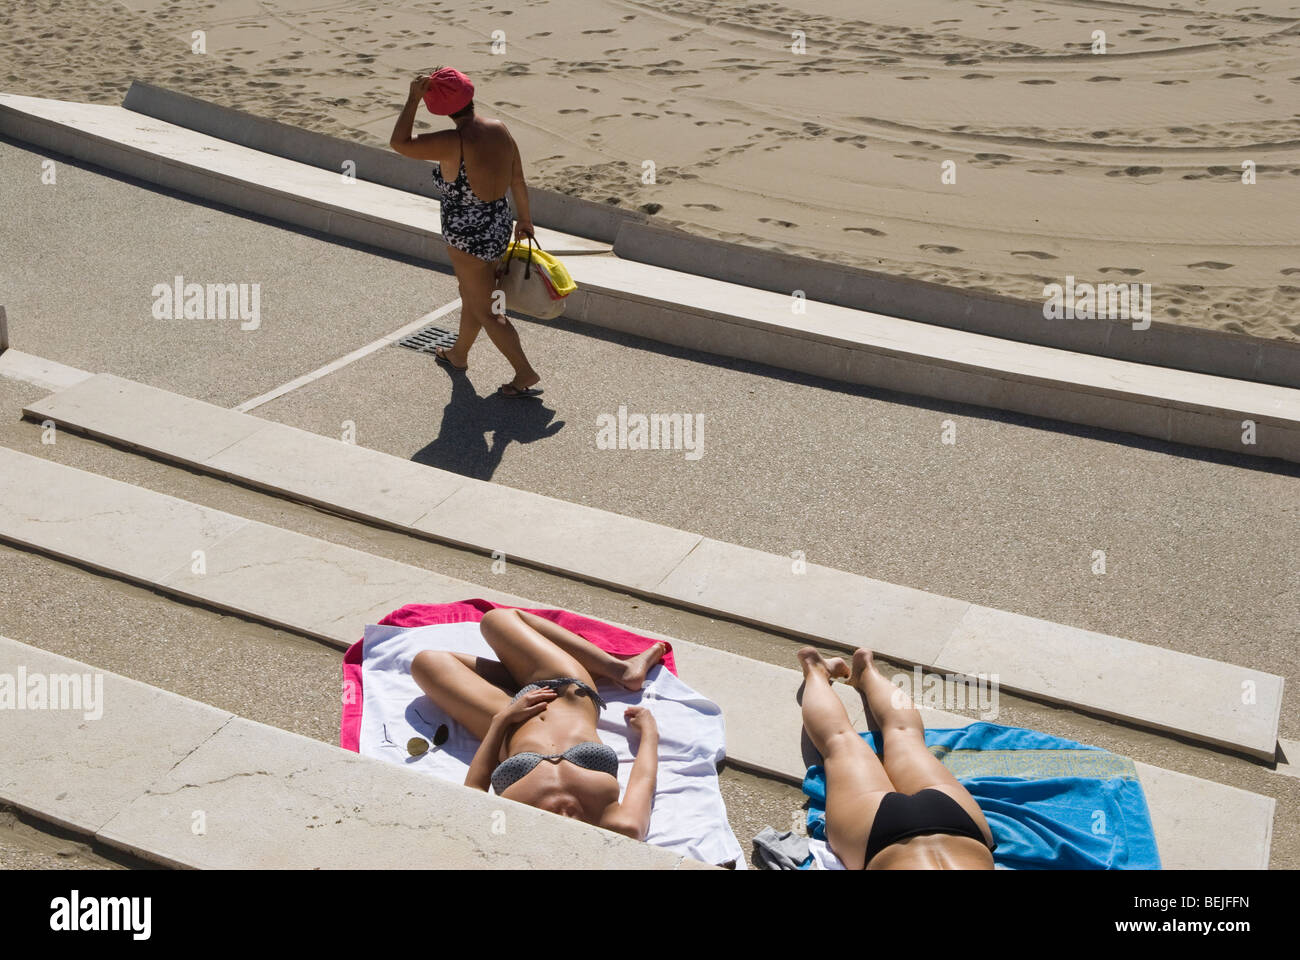 Venice Lido beach Italy. Young Italian women wearing bikini getting a suntan sunbathing, relaxing on holiday. Europe 2000s 2009 HOMER SYKES Stock Photo